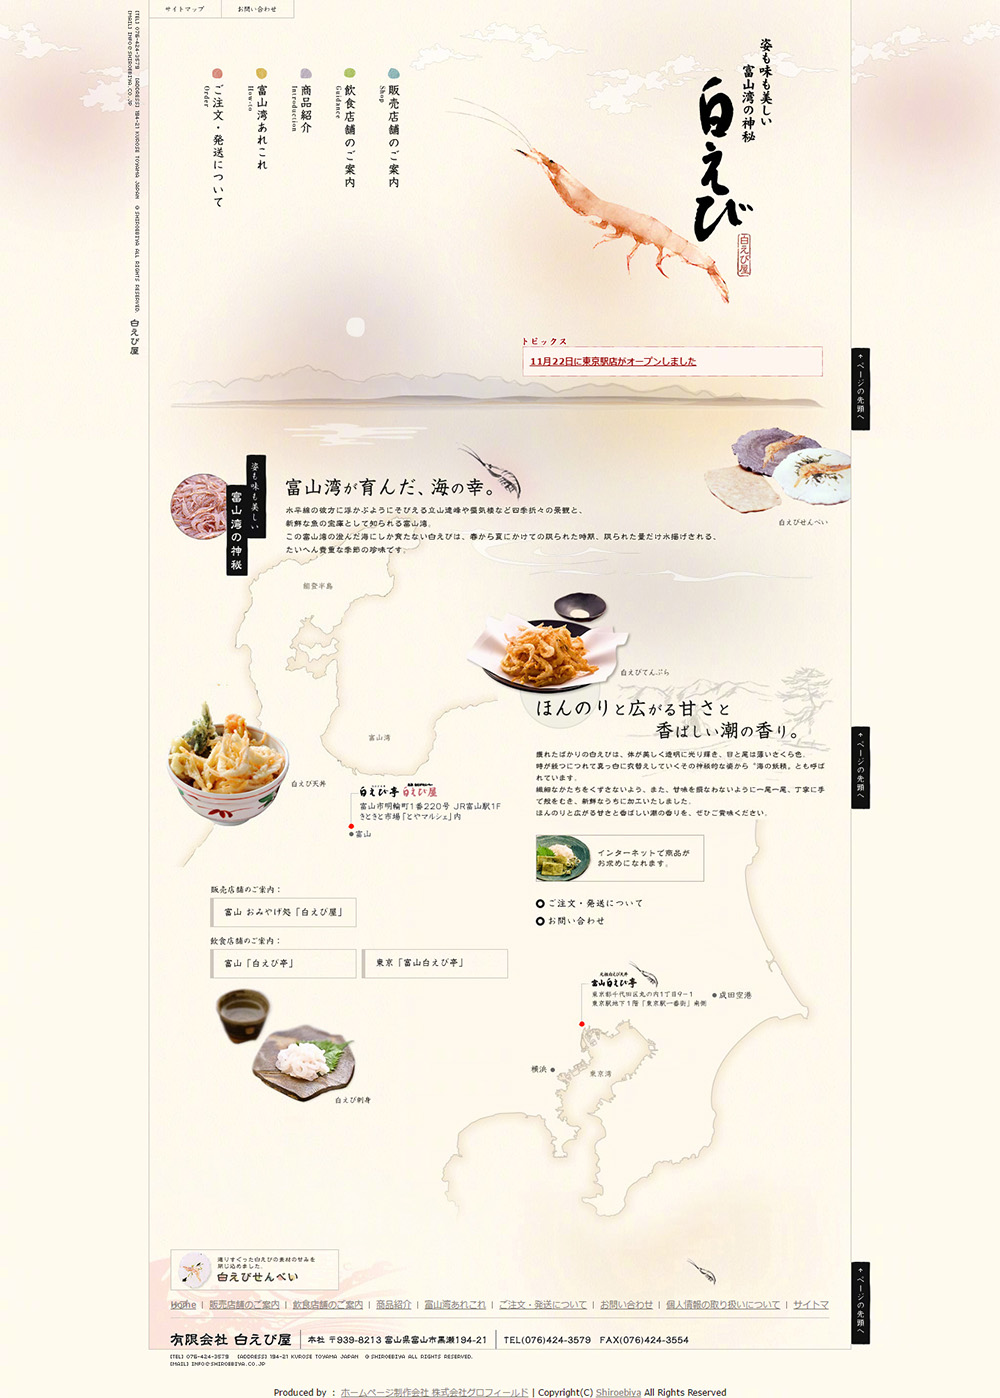 日式网页设计的出色表现方式